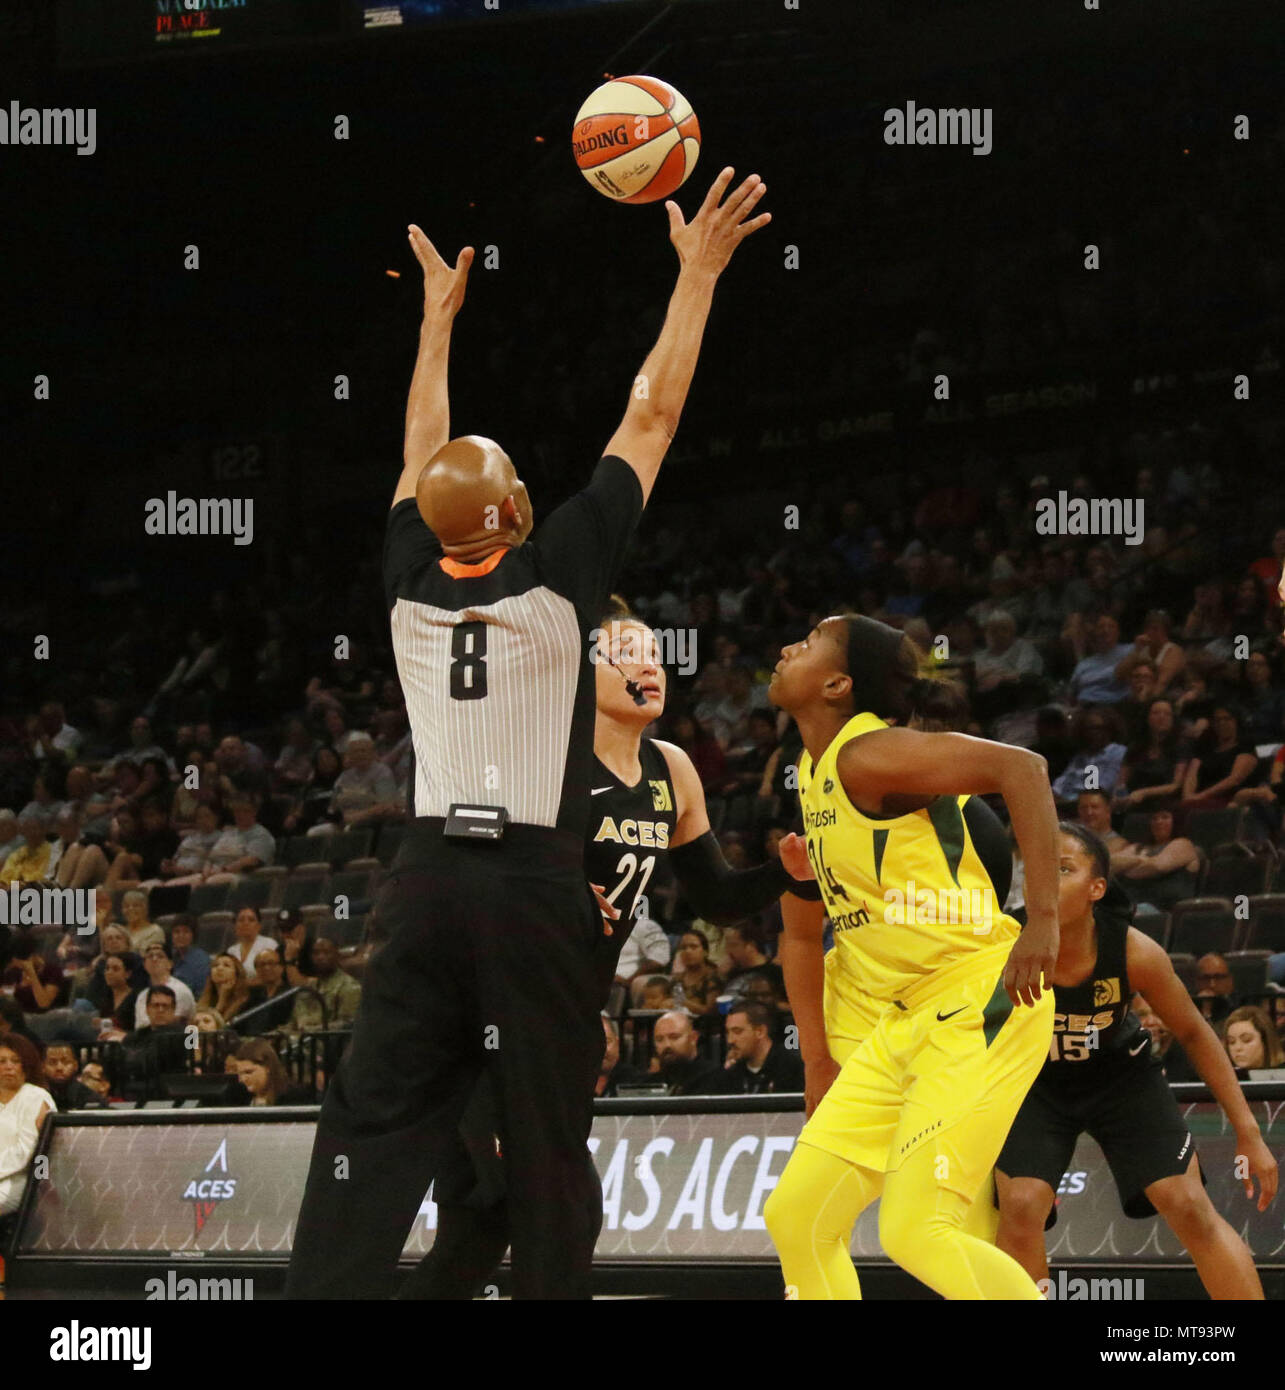 Wilson, McBride pace Aces past LA Sparks — VIDEO HIGHLIGHTS, Aces/WNBA, Sports